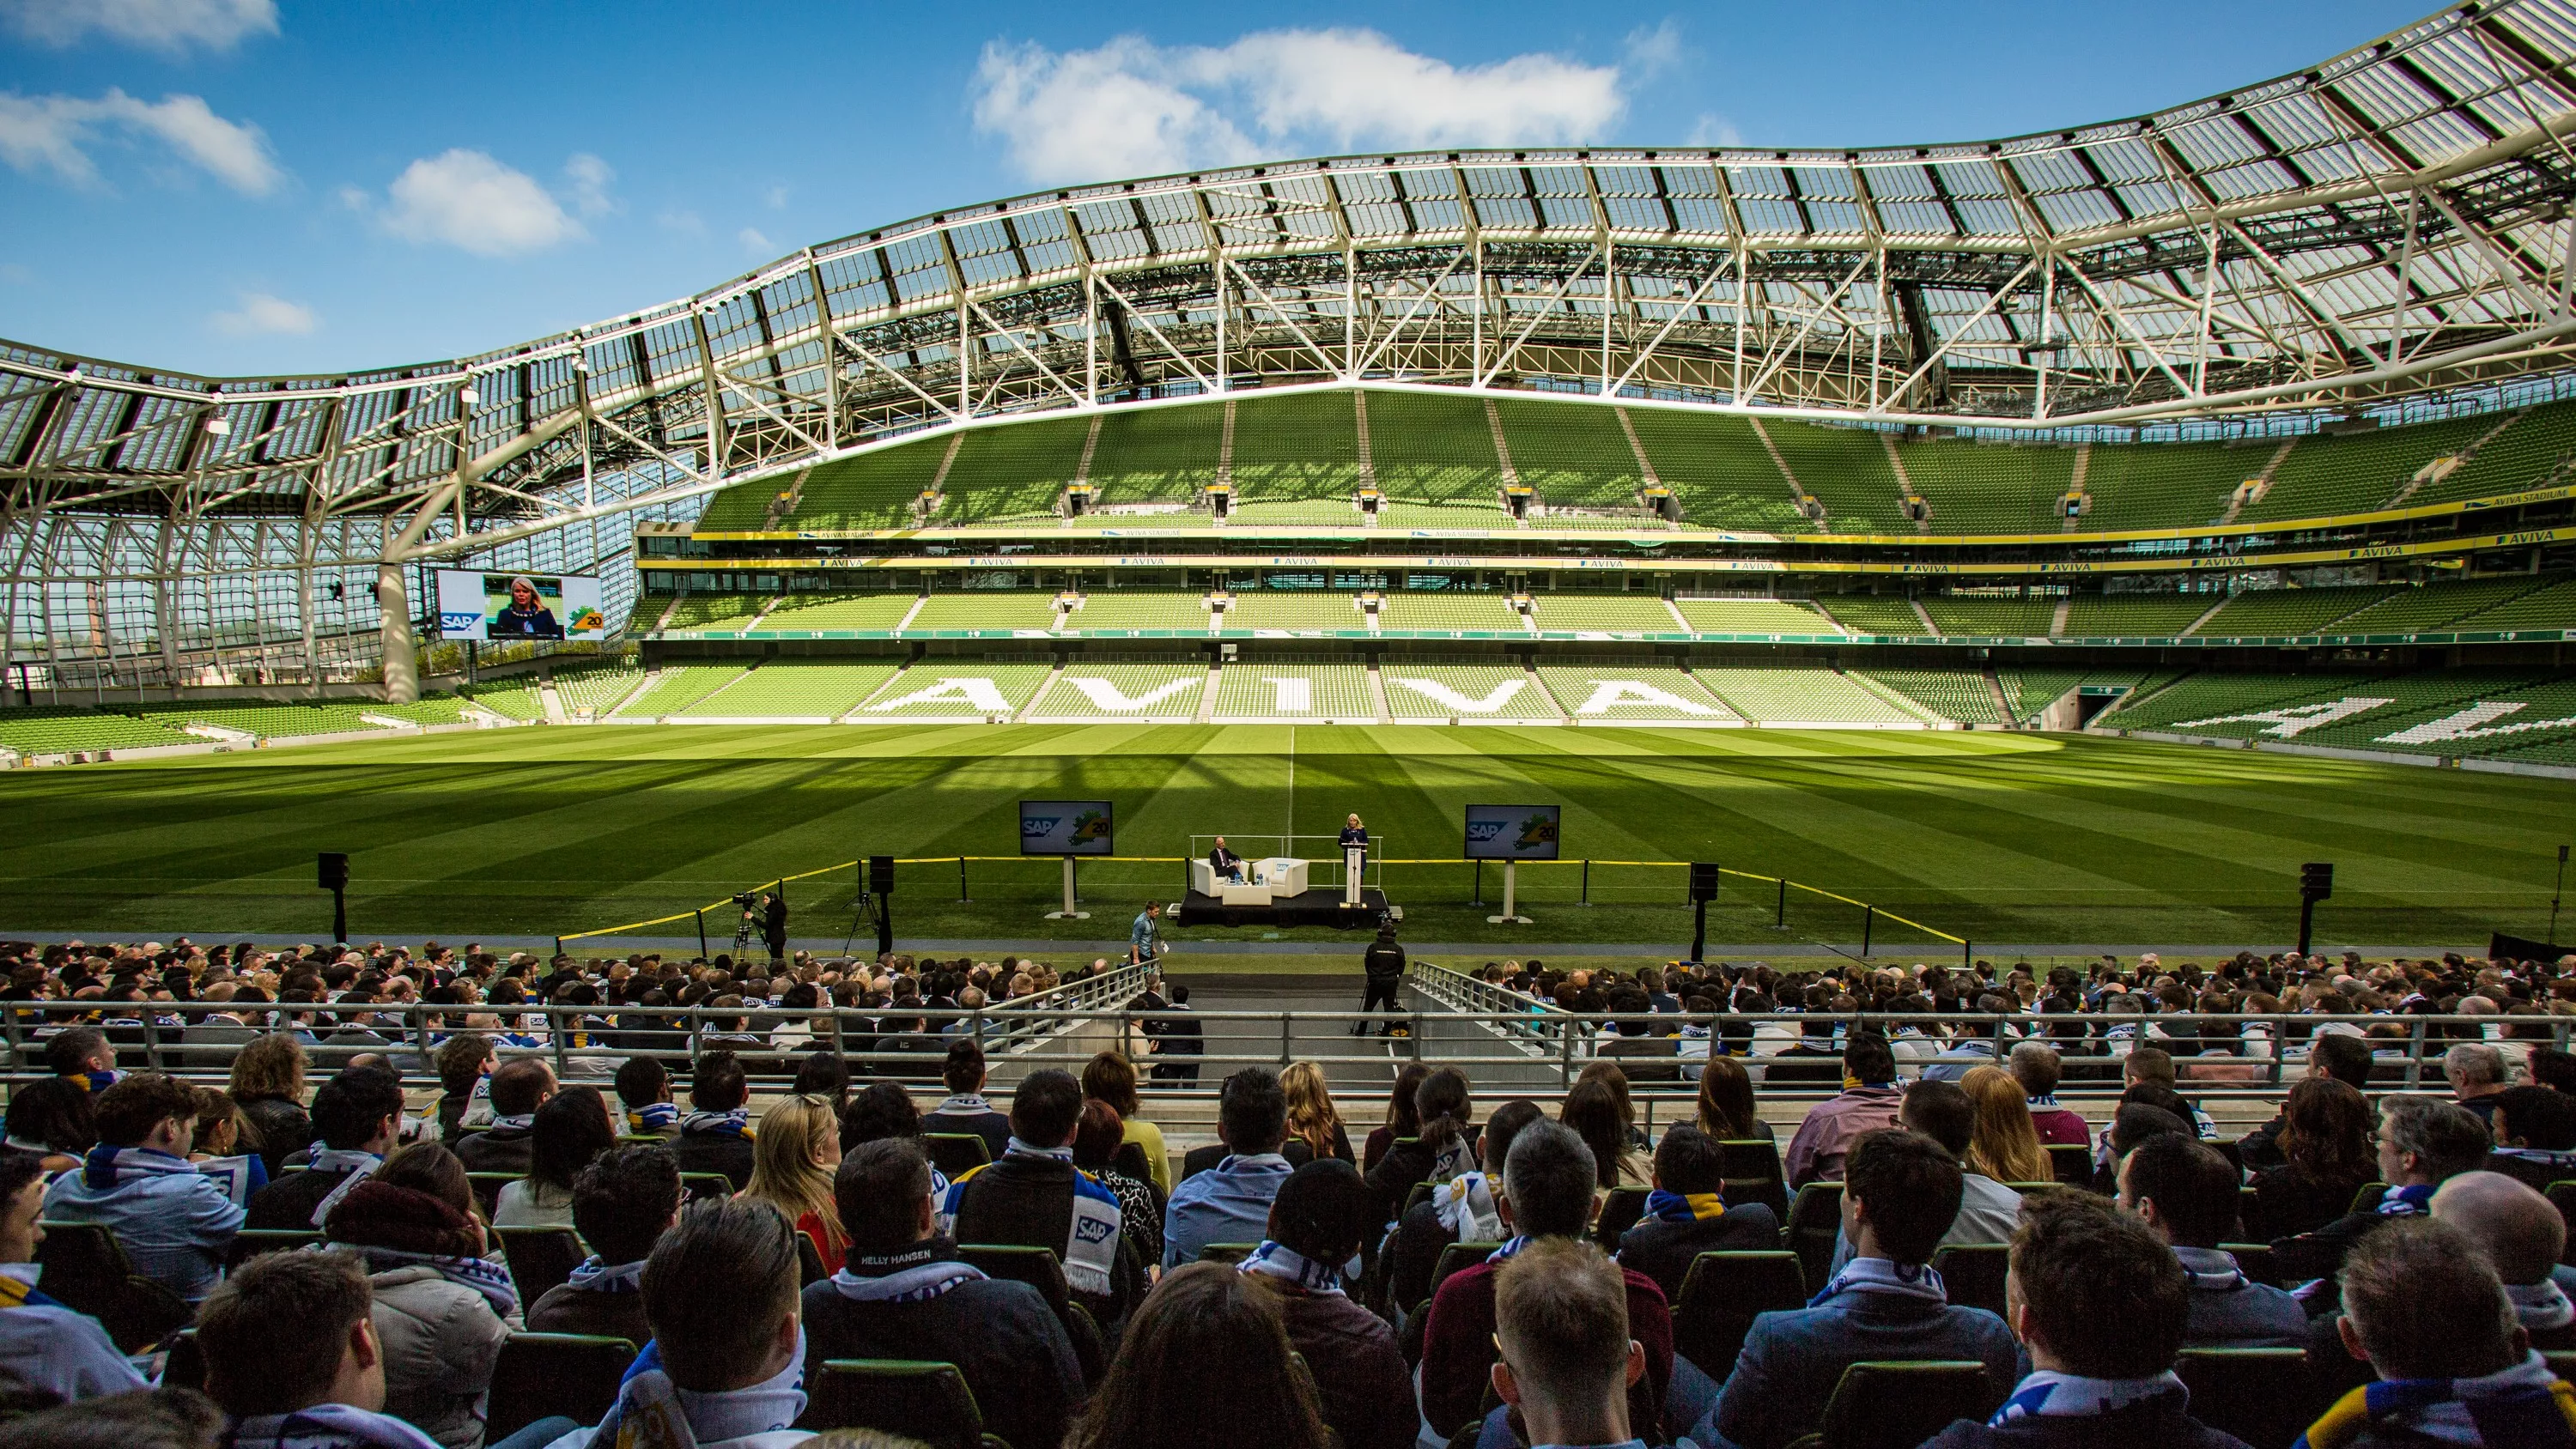 Aviva Stadium in Ireland, Europe | Football - Rated 4.2